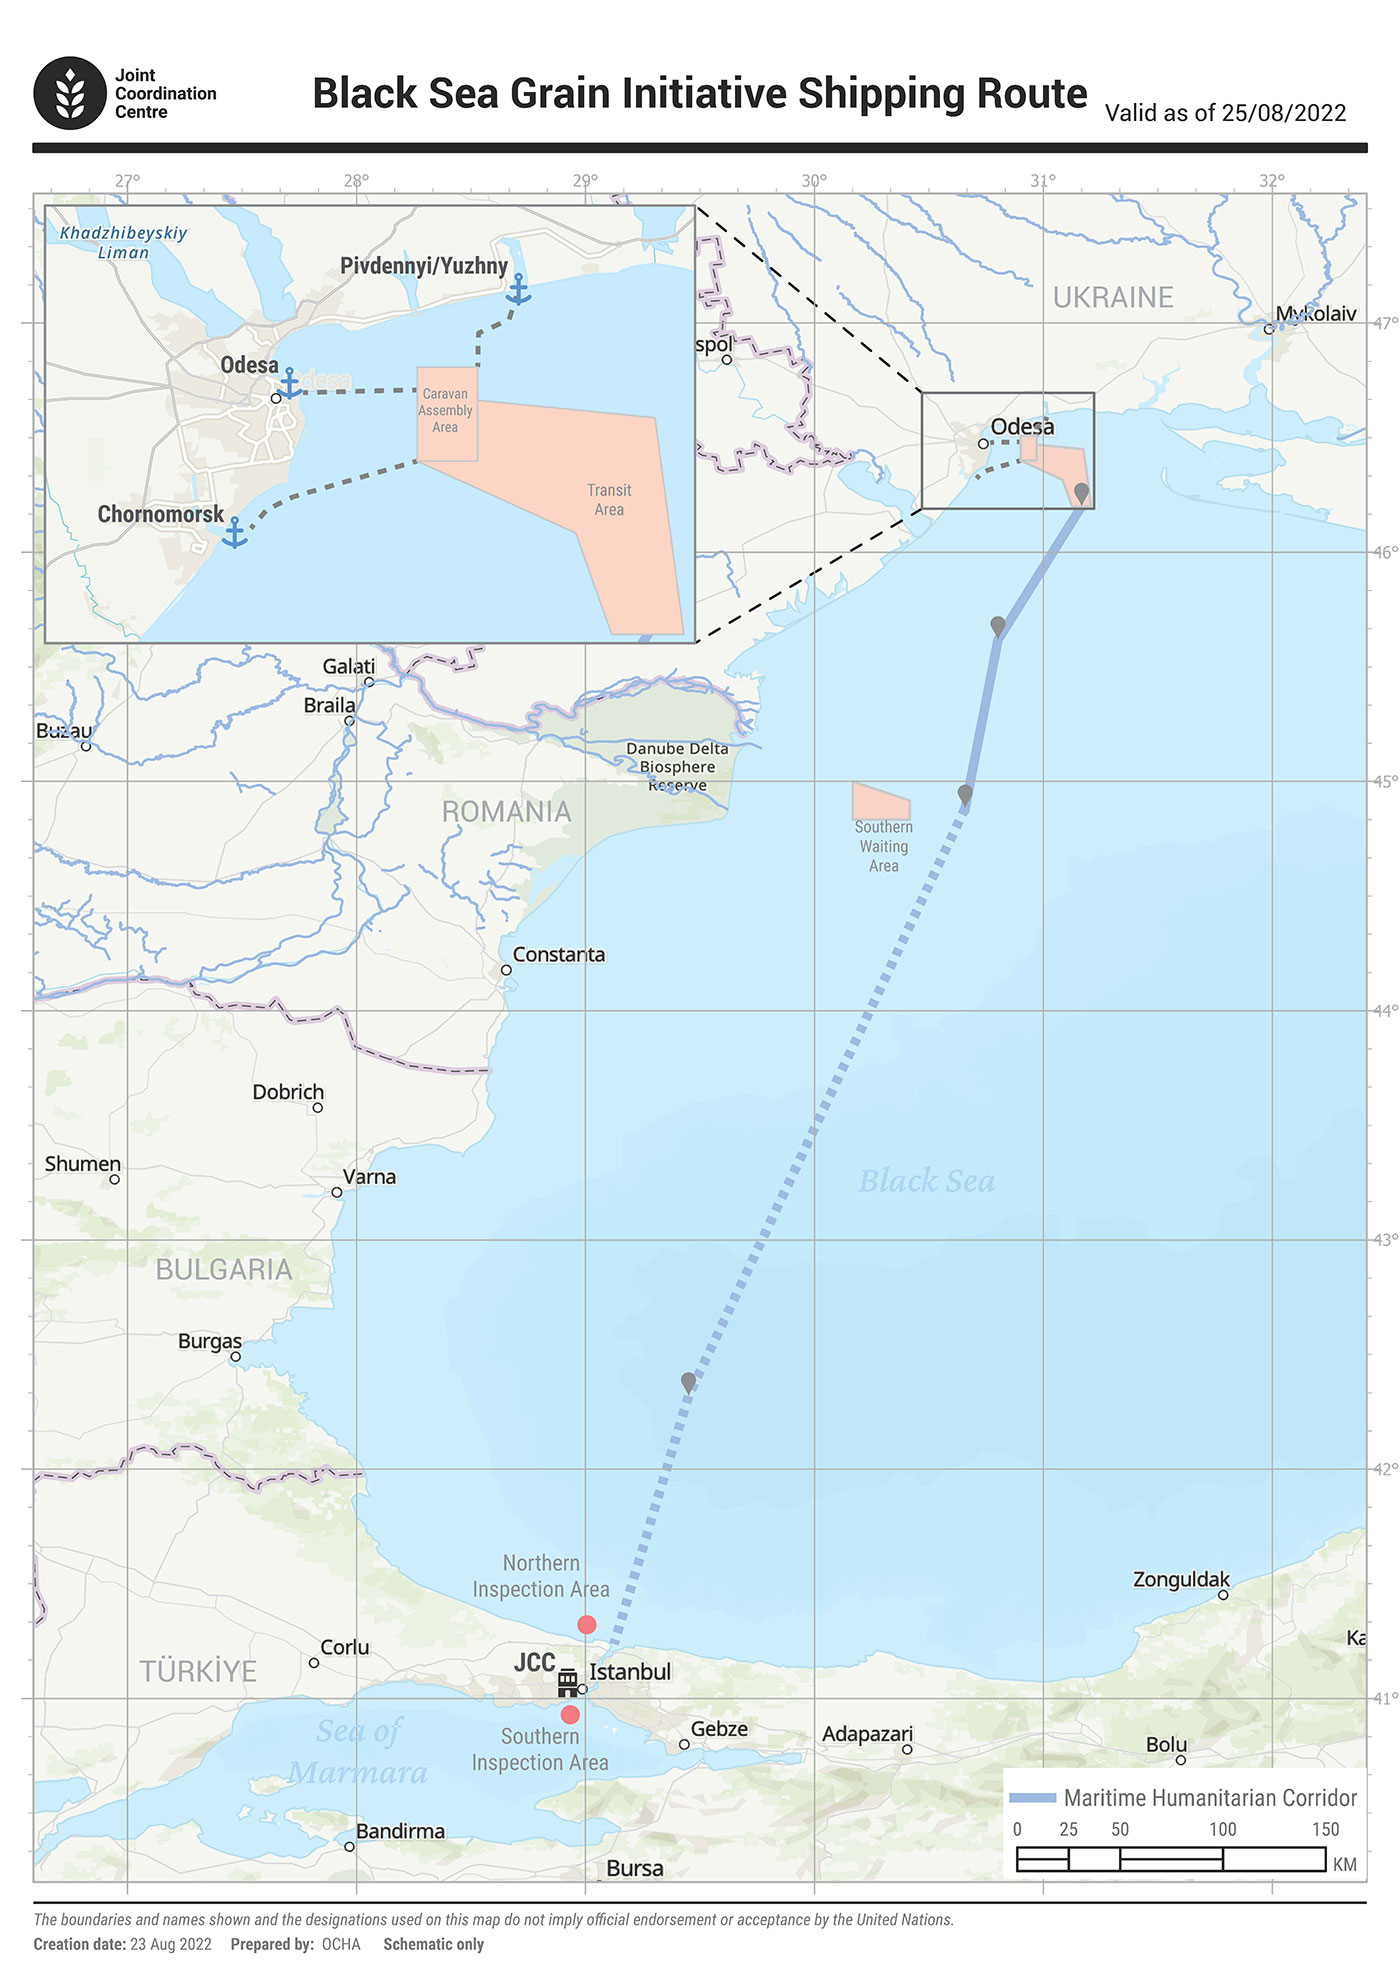 Mapa del corredor de granos del Mar Negro. Centro de Coordinación Conjunta de la Iniciativa de Granos del Mar Negro de las Naciones Unidas.